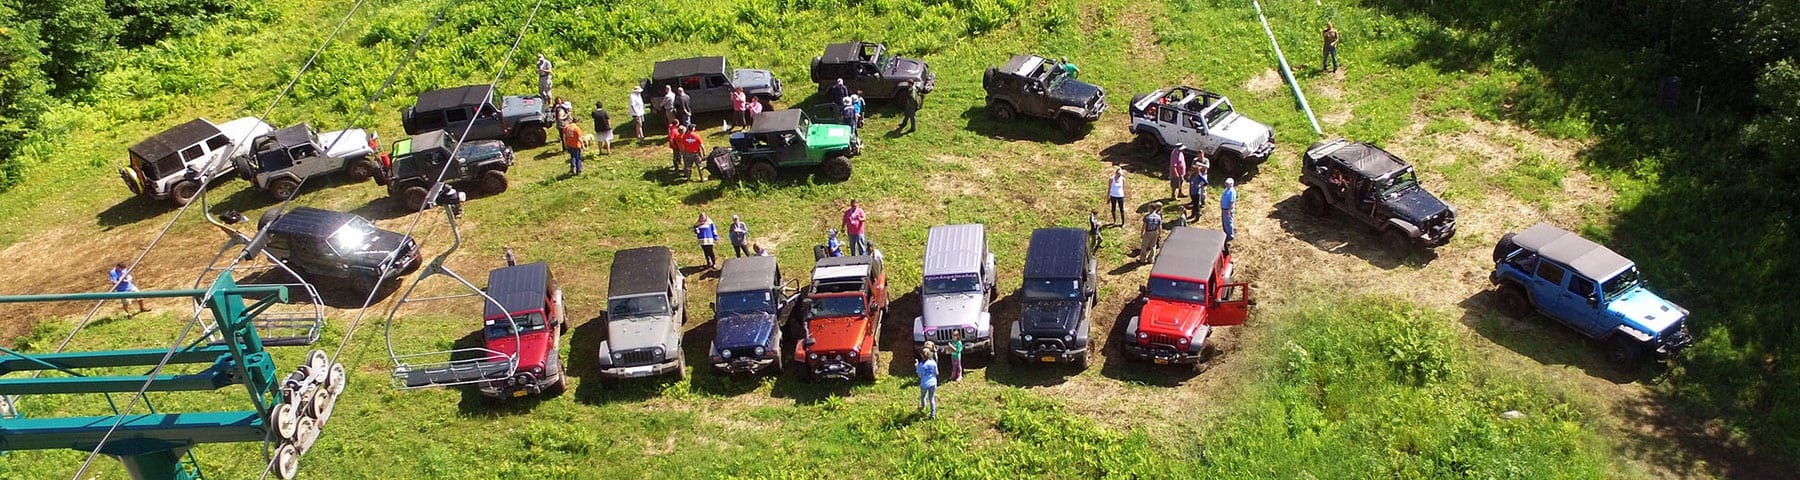 killington jeep trip